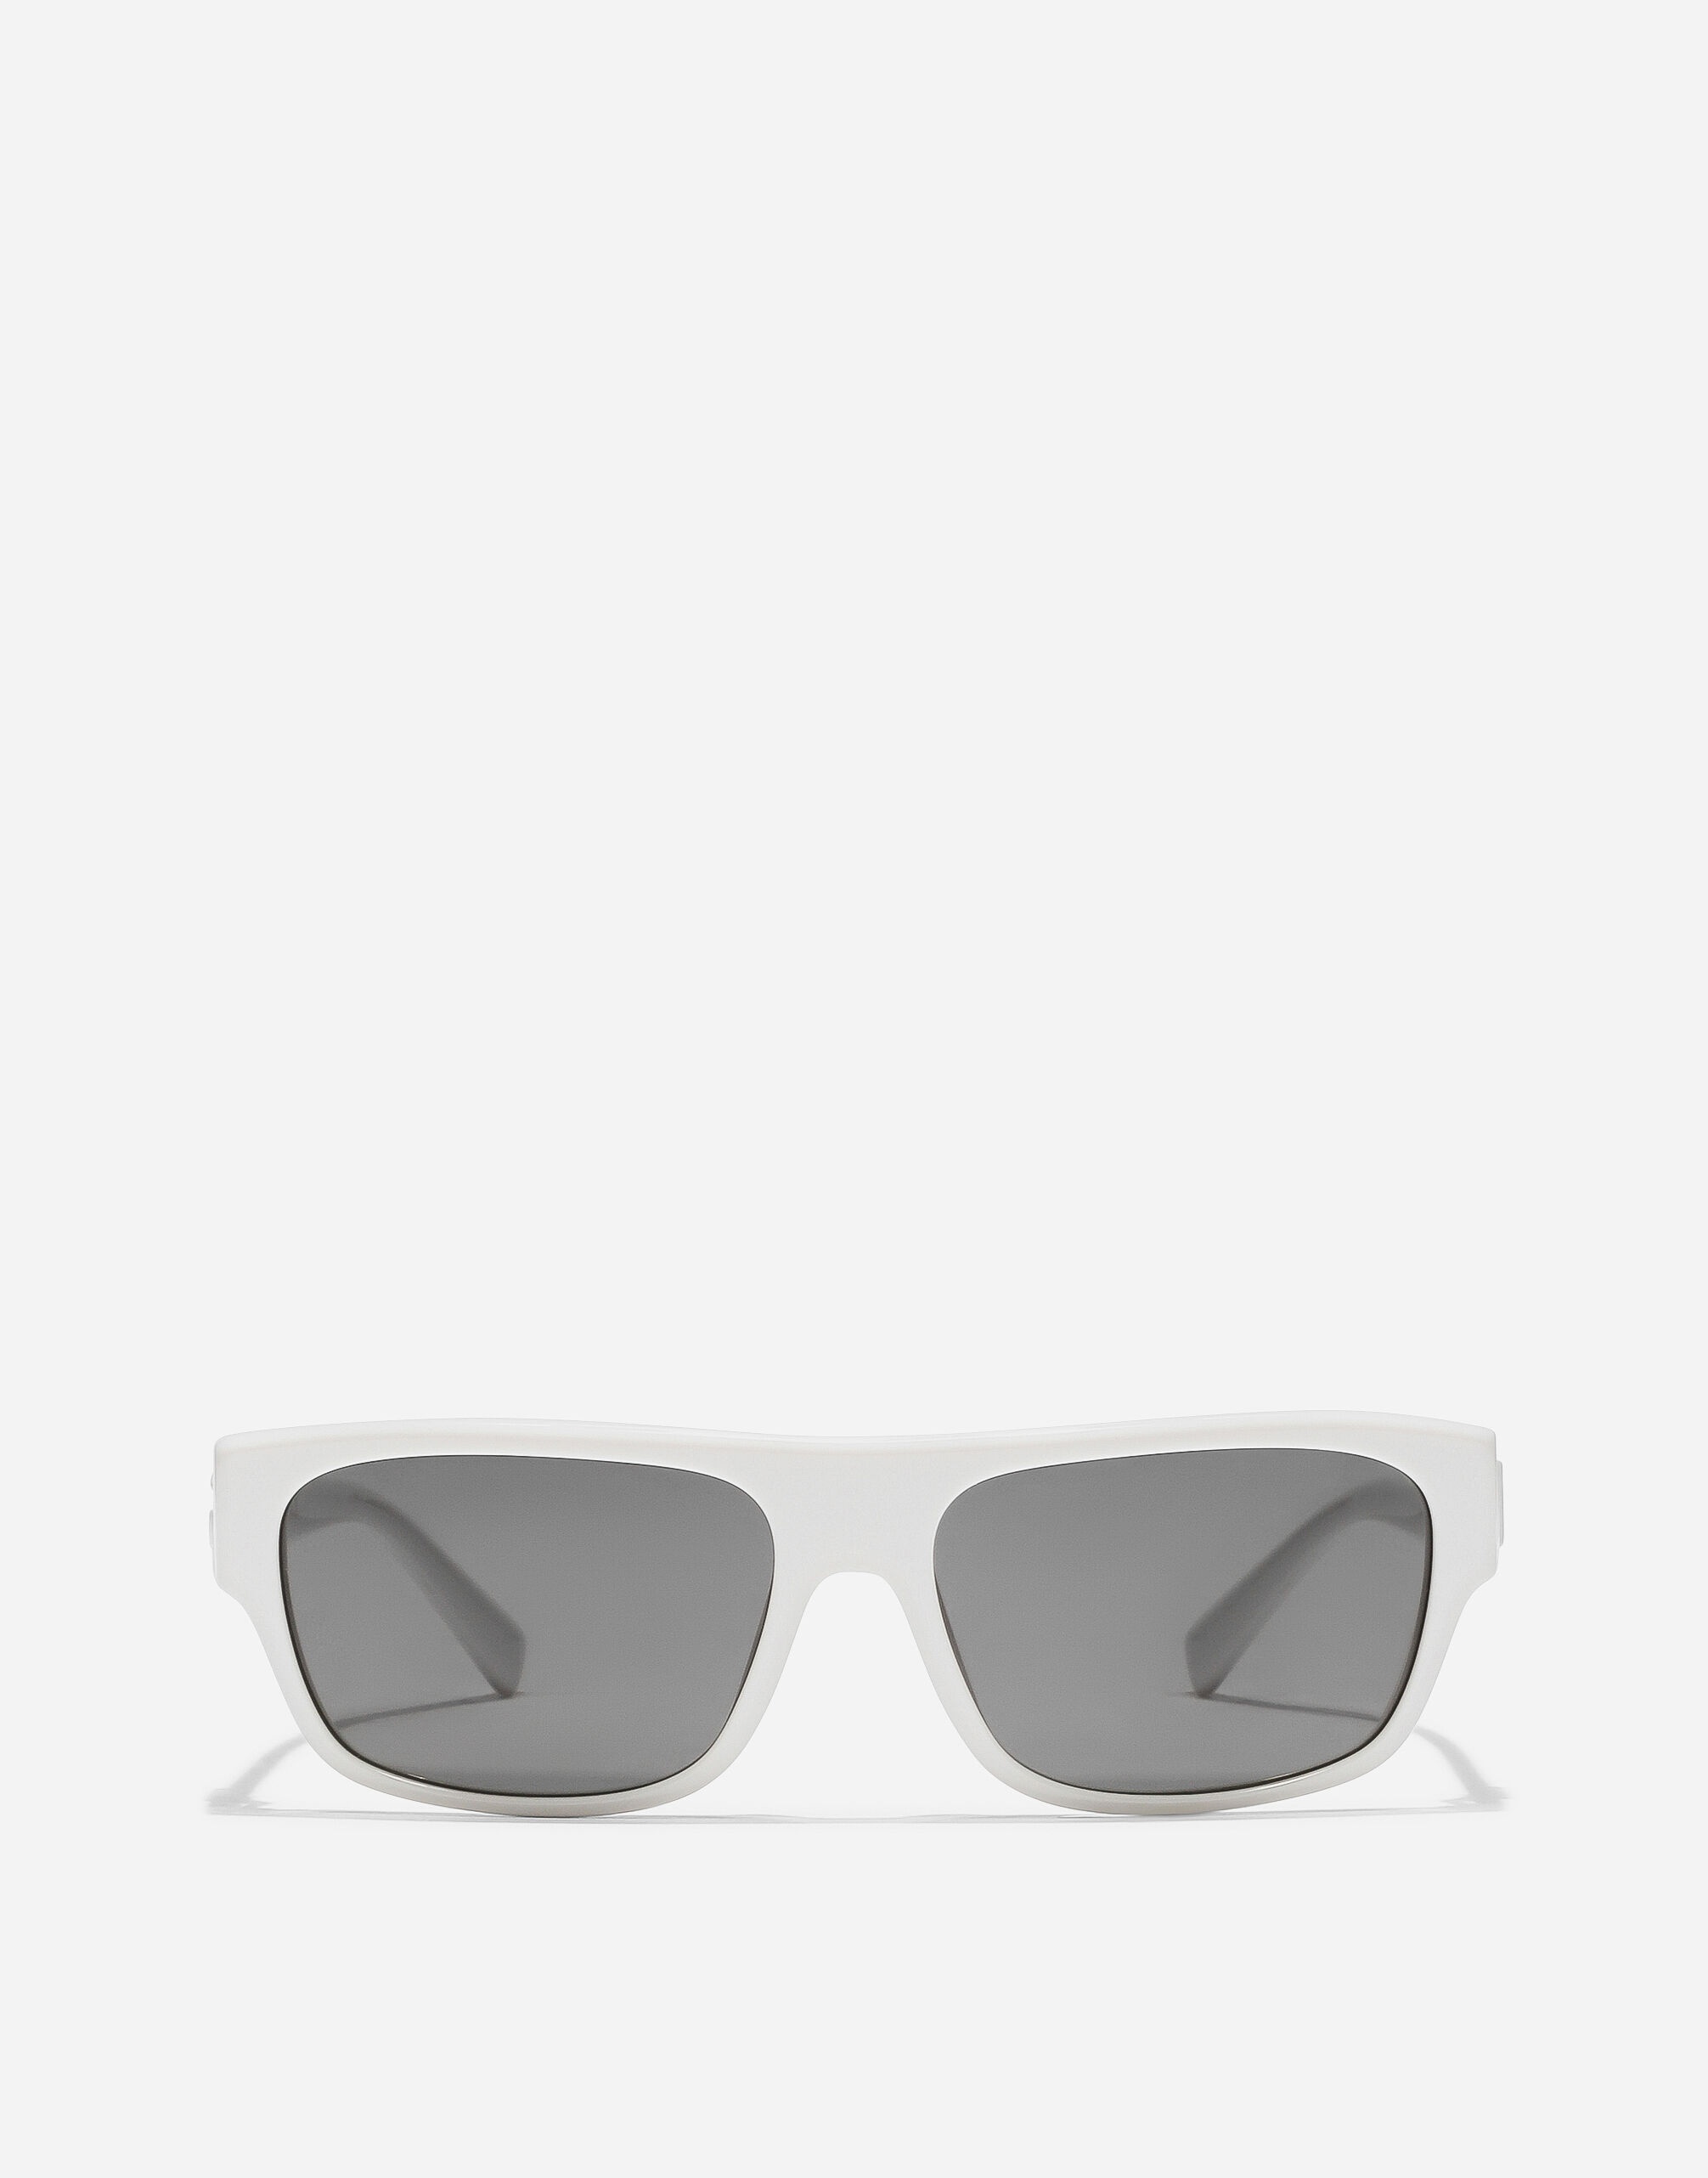 DG Crossed sunglasses - 1